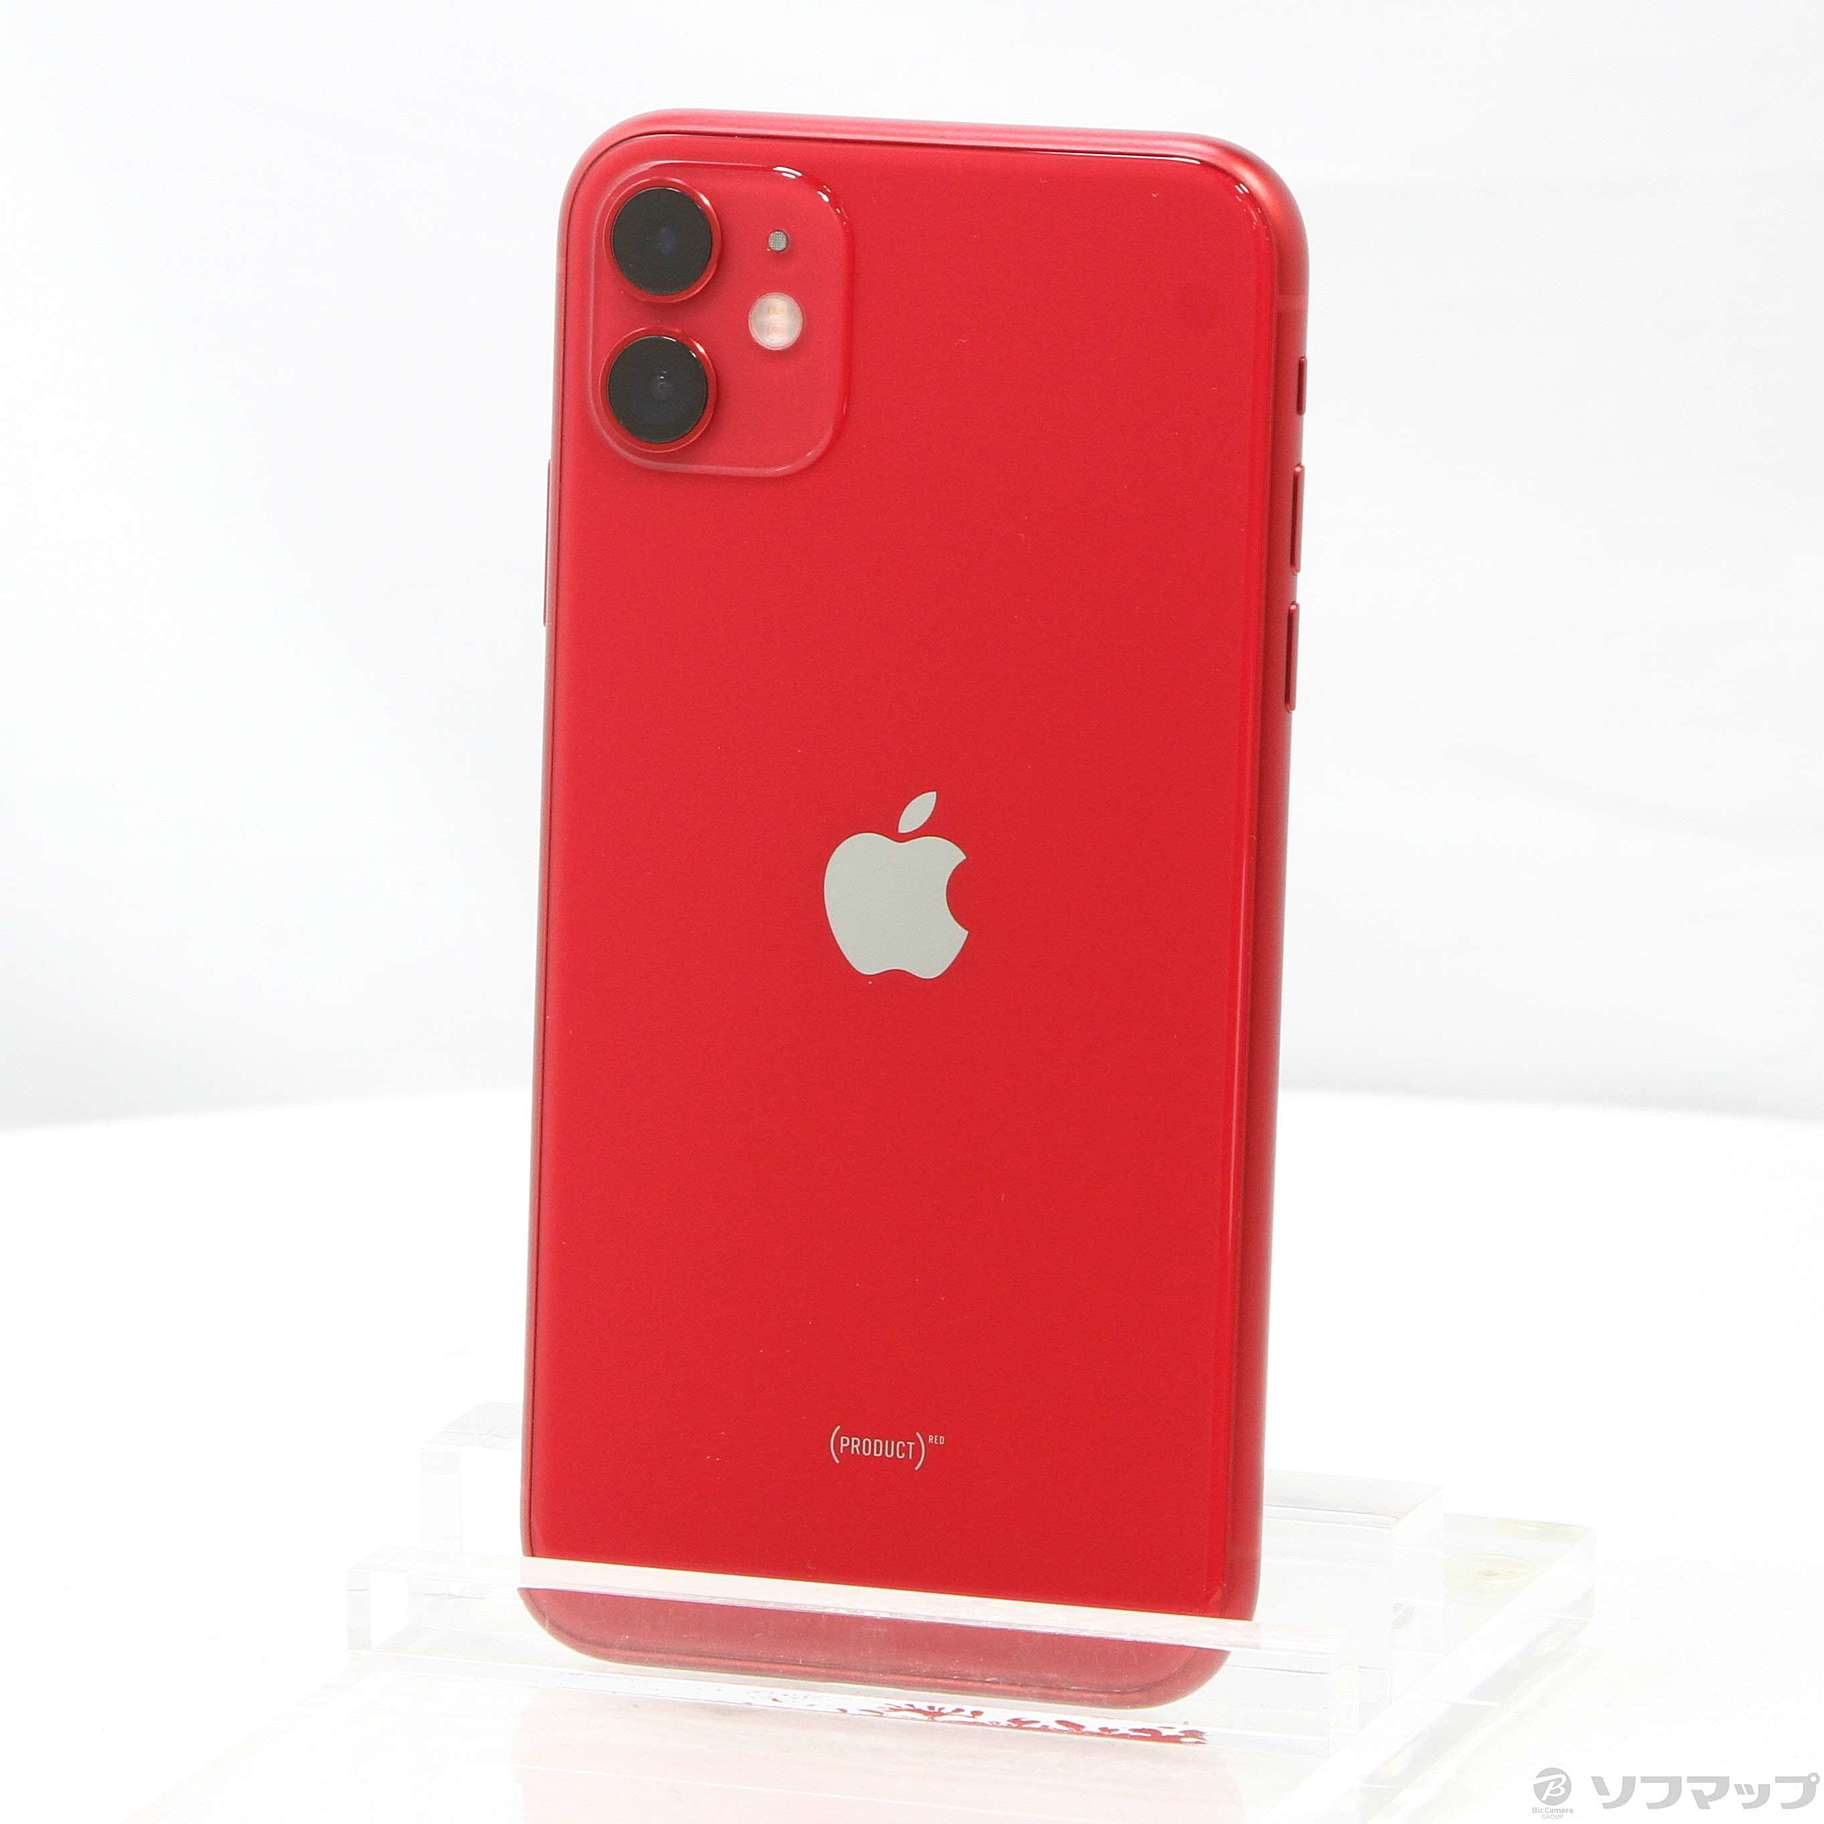 Apple iPhone11 256GB SIMフリー レッド MWM92J A - 携帯電話